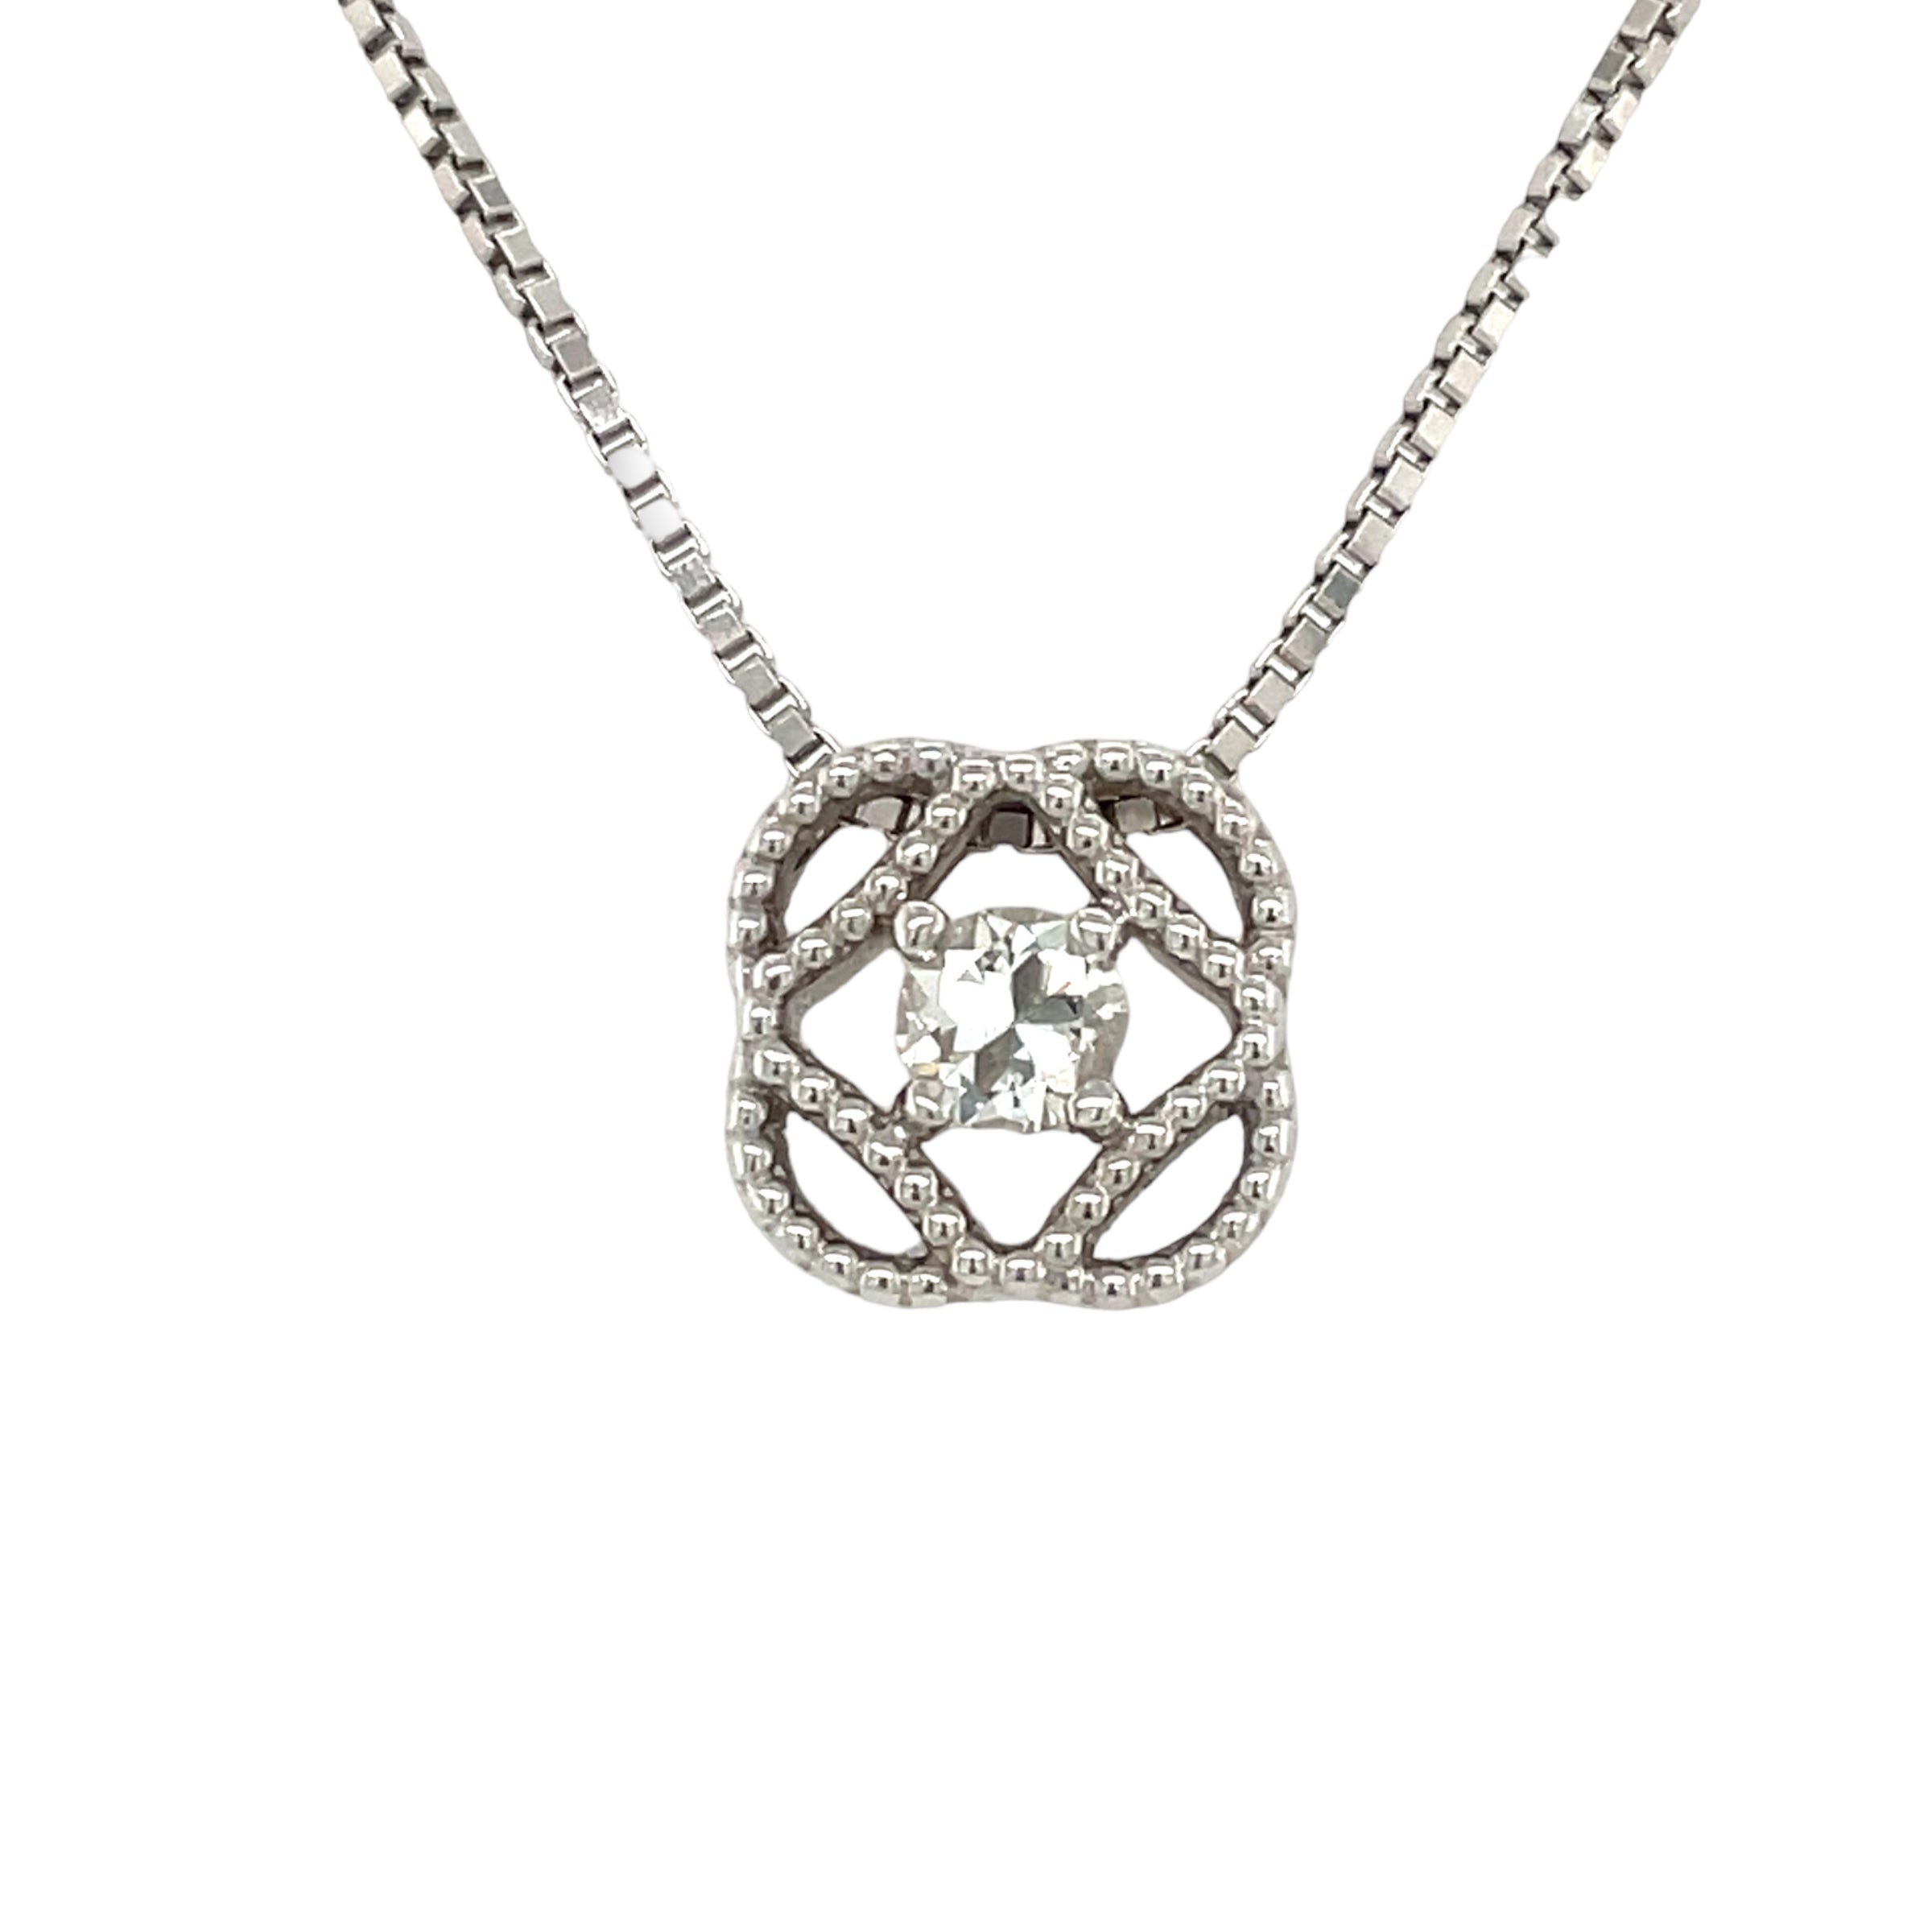 Cari Diamond Necklace in 14k White Gold